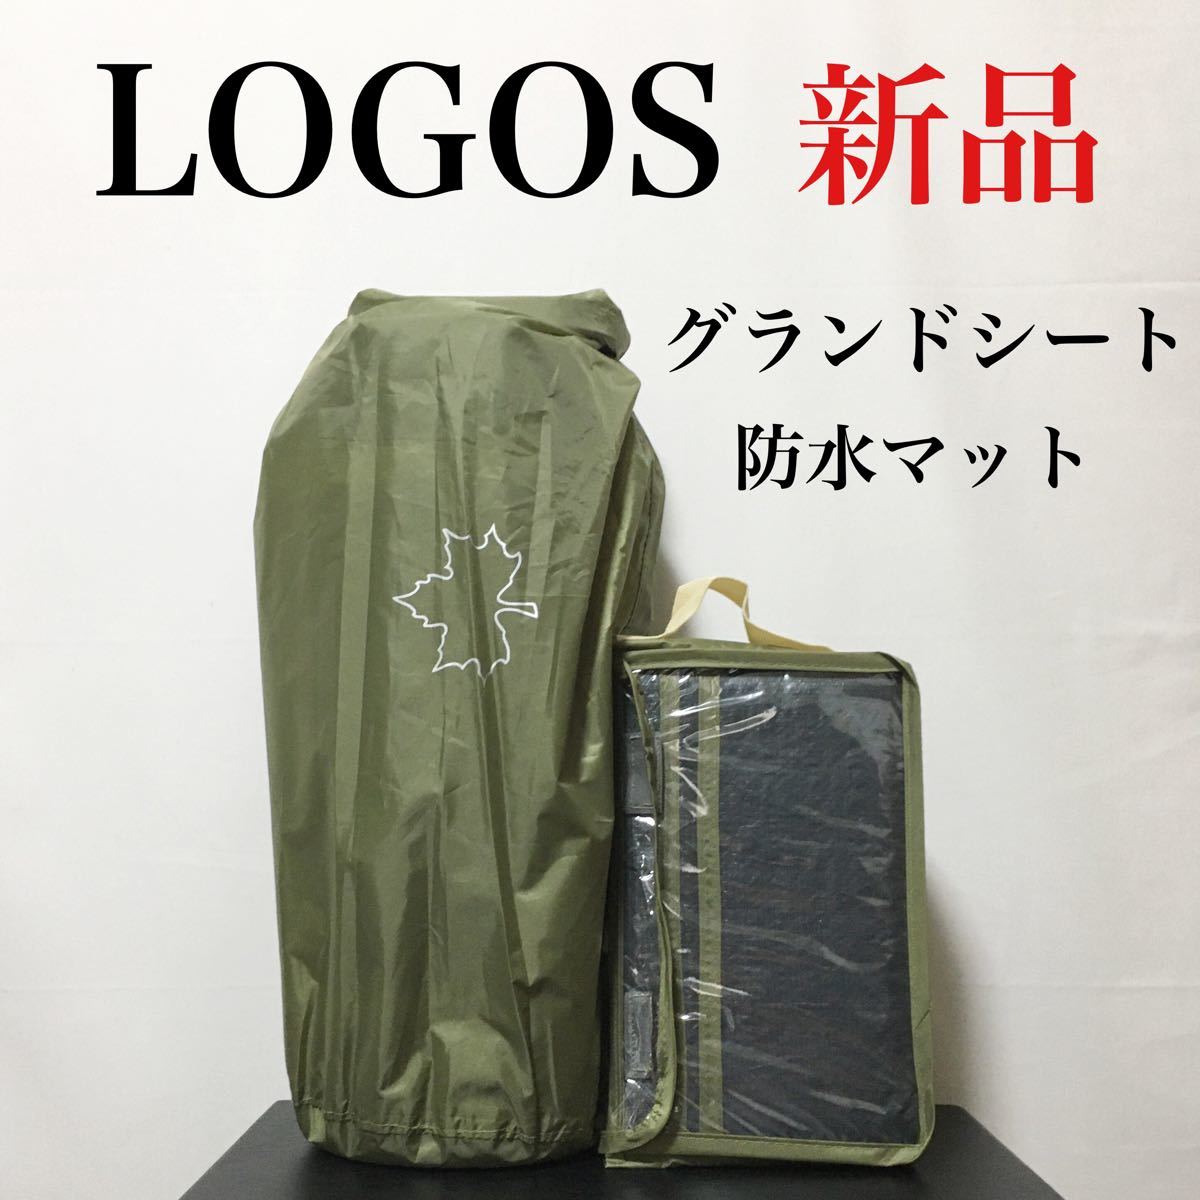 売れ筋新商品 テント ロゴス 【新品】LOGOS 防水マット セット DUO 